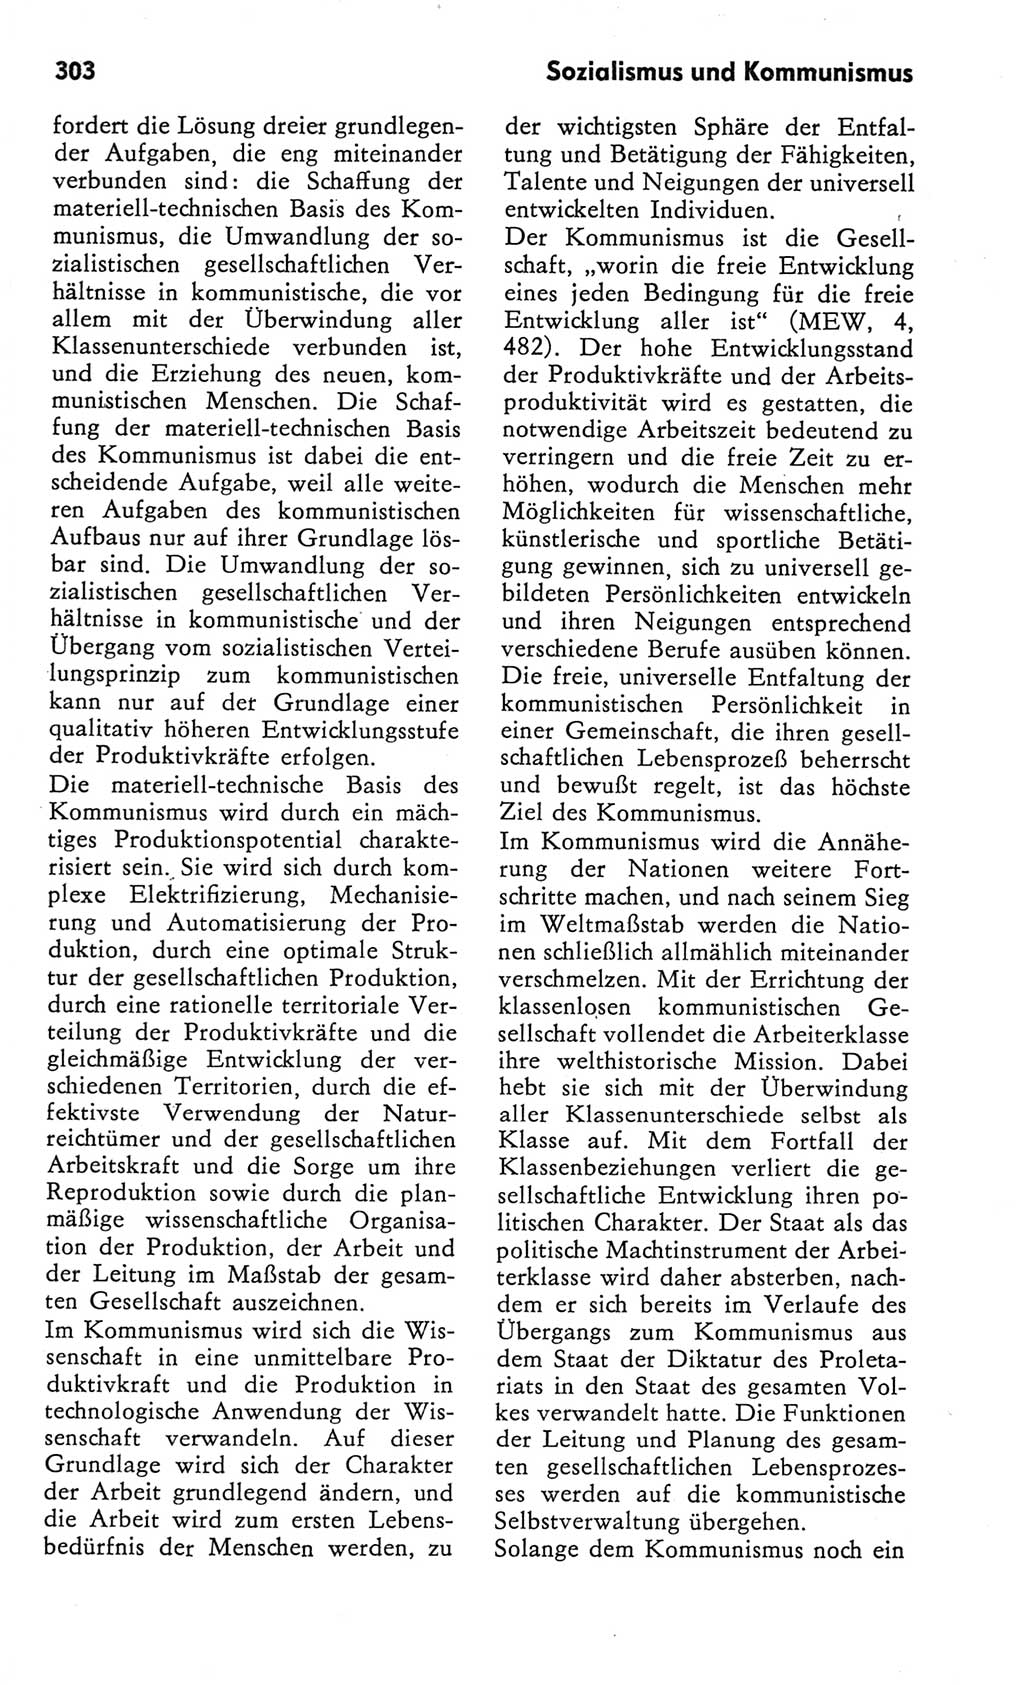 Kleines Wörterbuch der marxistisch-leninistischen Philosophie [Deutsche Demokratische Republik (DDR)] 1982, Seite 303 (Kl. Wb. ML Phil. DDR 1982, S. 303)